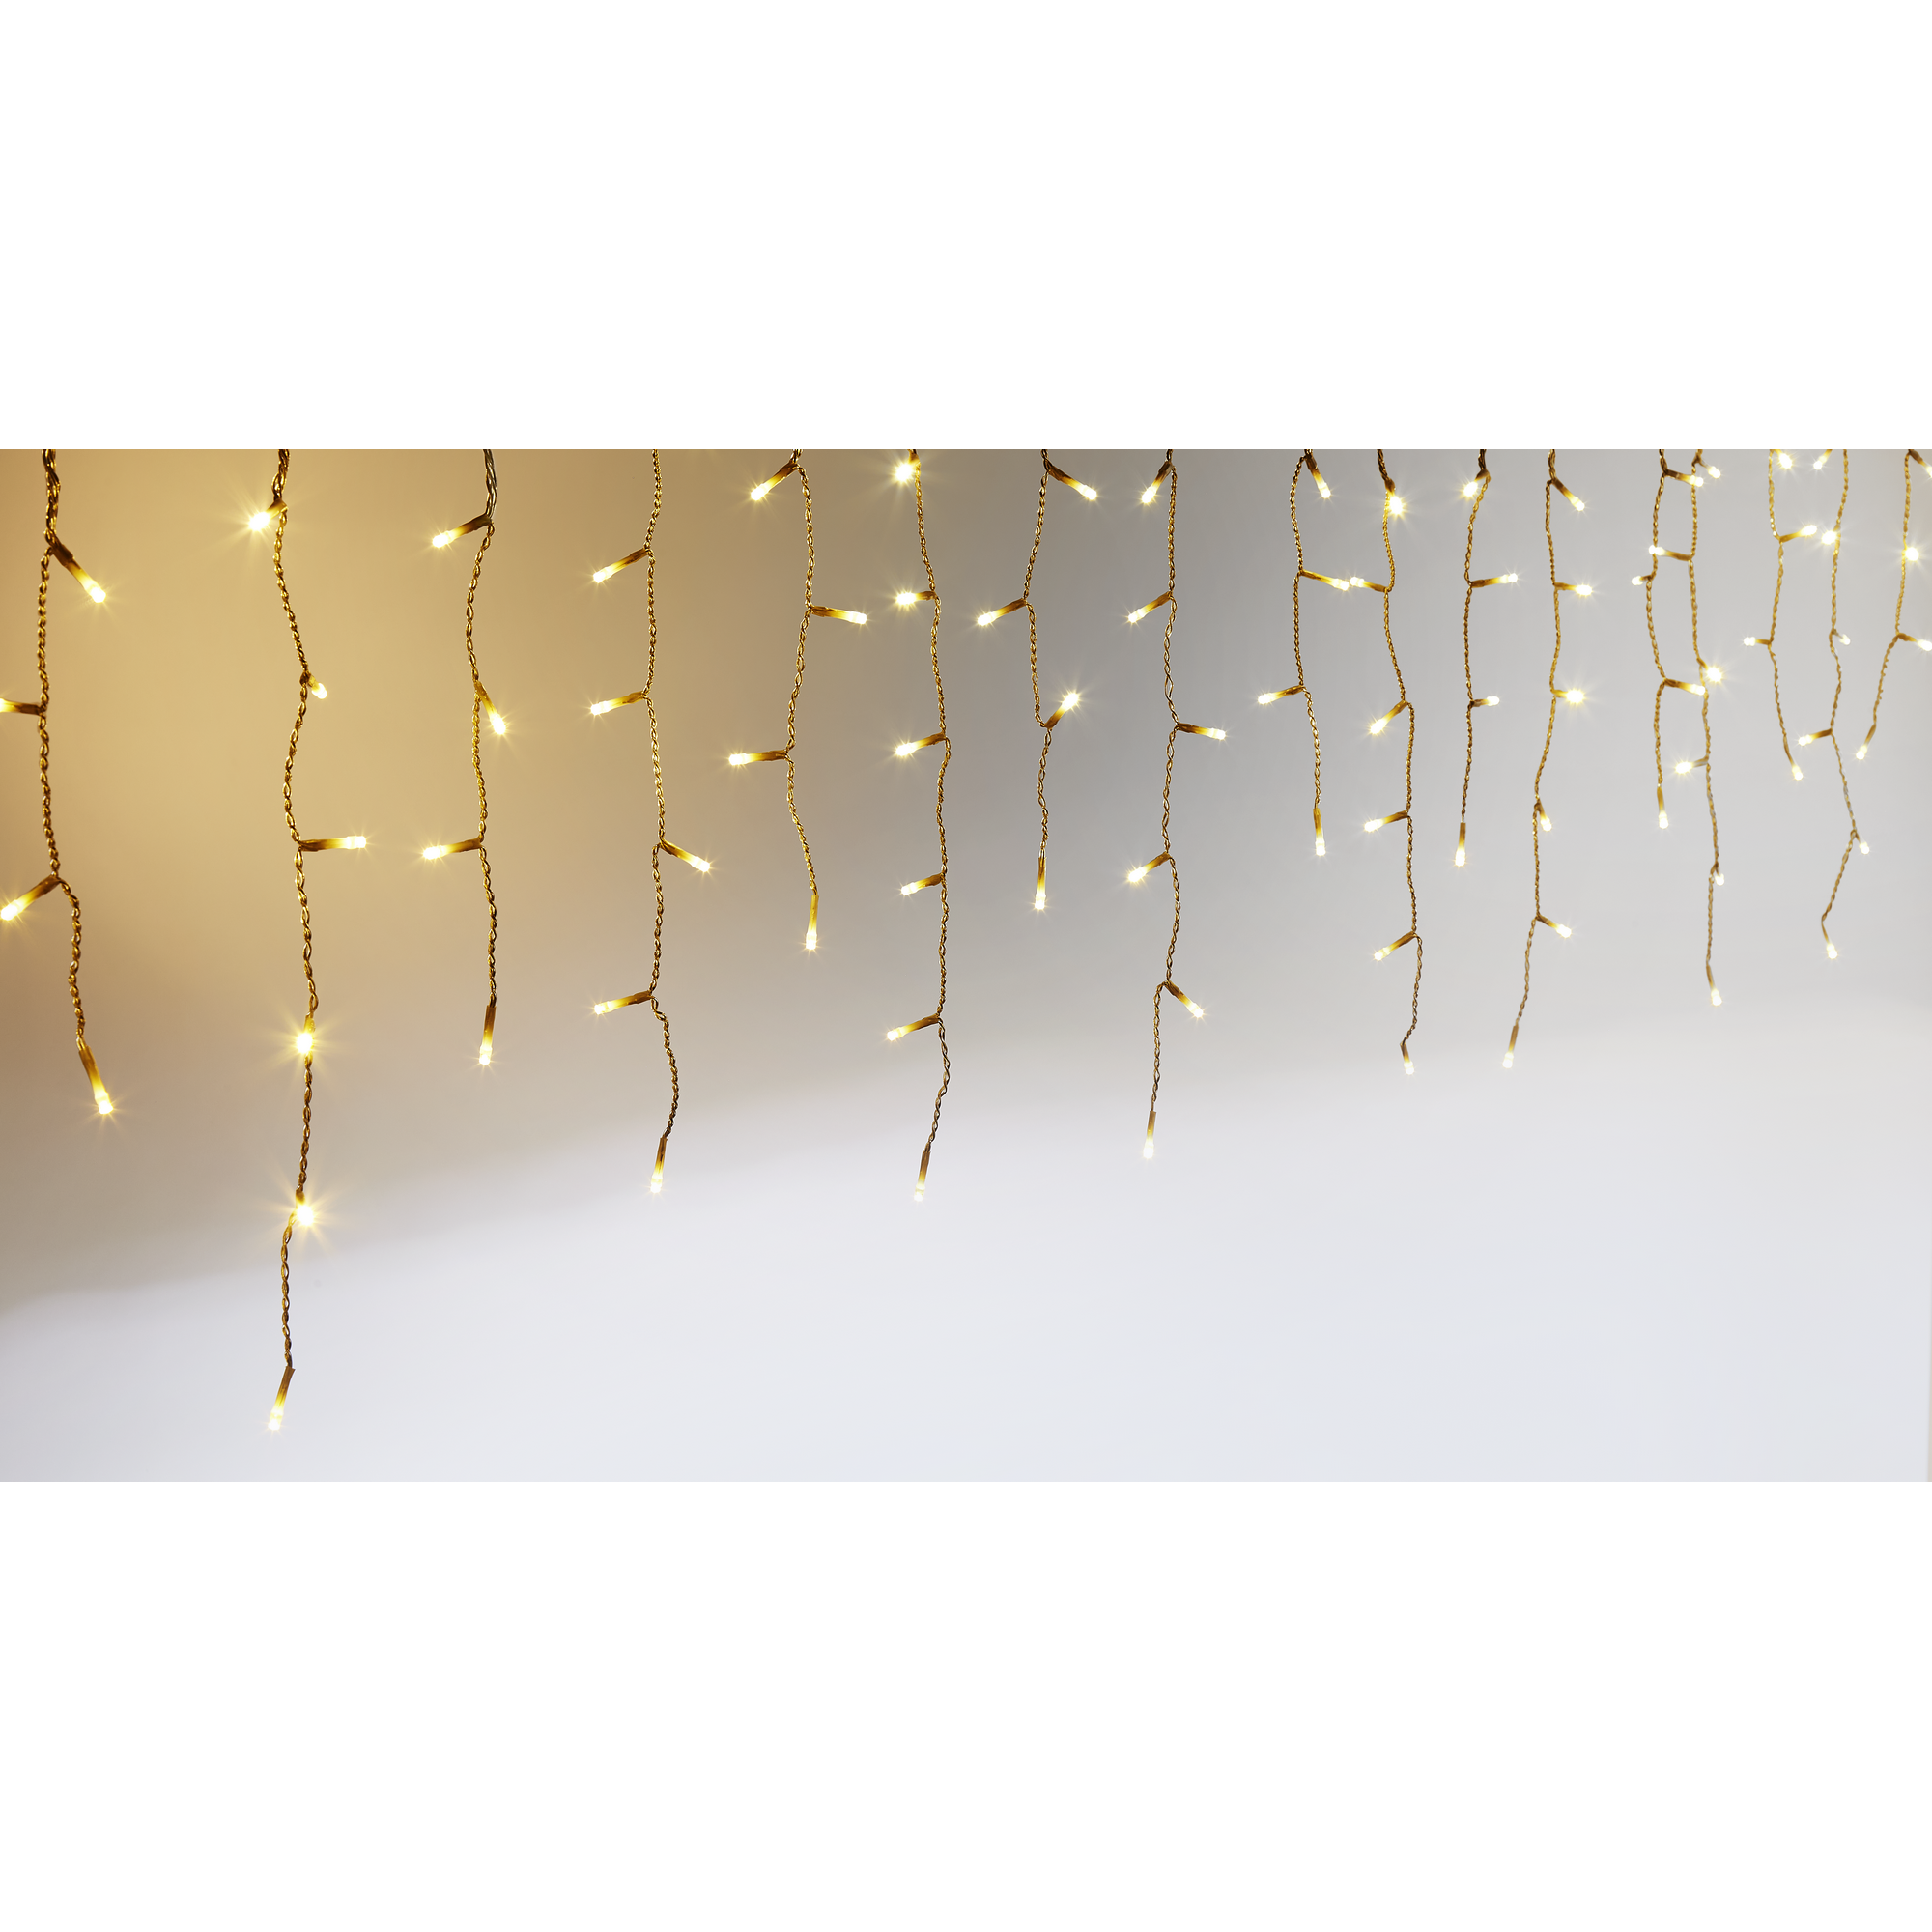 LED-Lichtervorhang 'Eisregen' 400 LEDs warmweiß 80 Stränge 950 cm + product picture